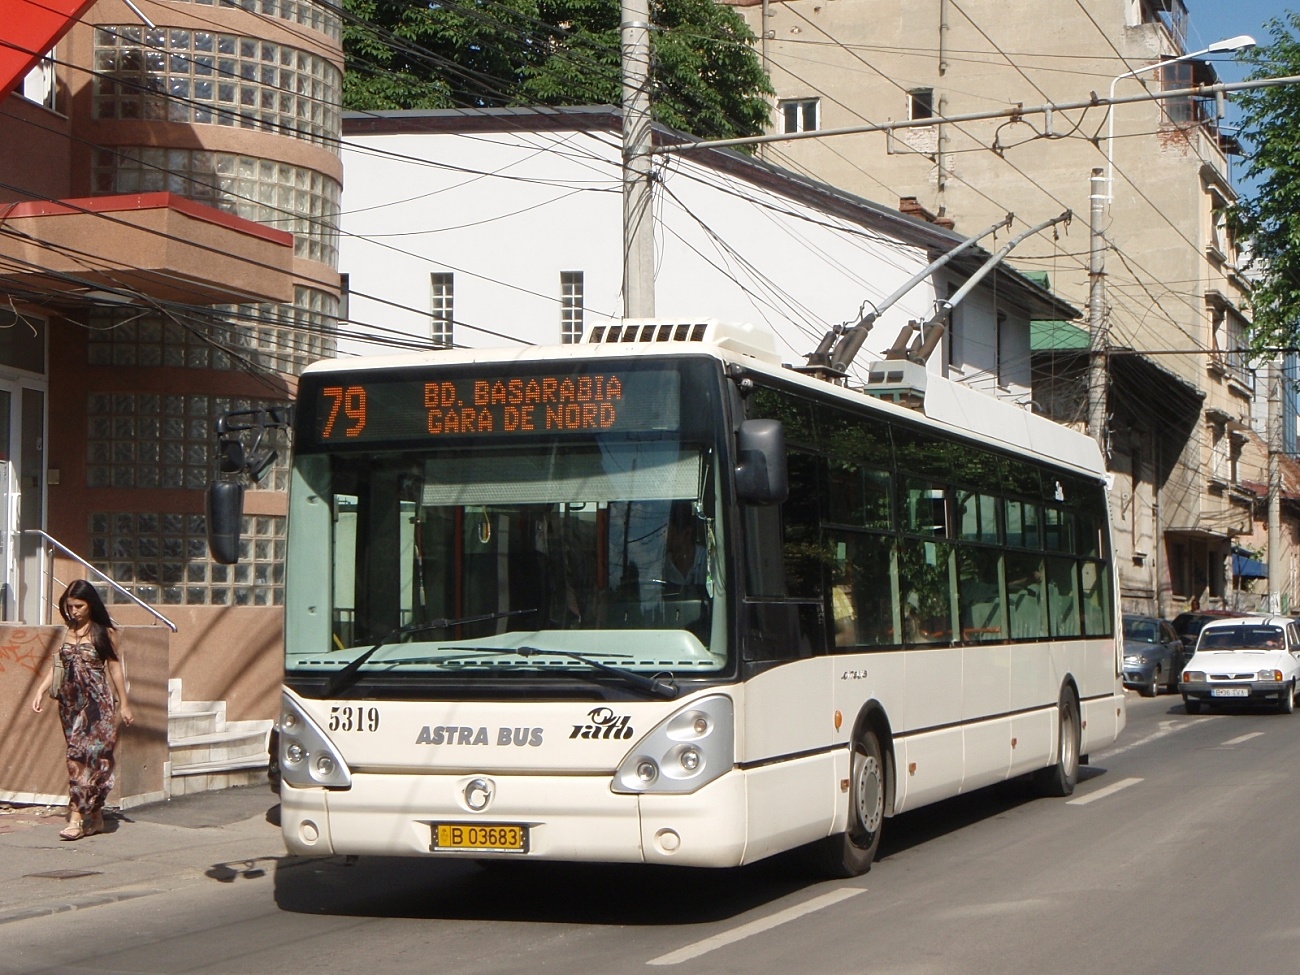 Irisbus Citelis 12T #5319